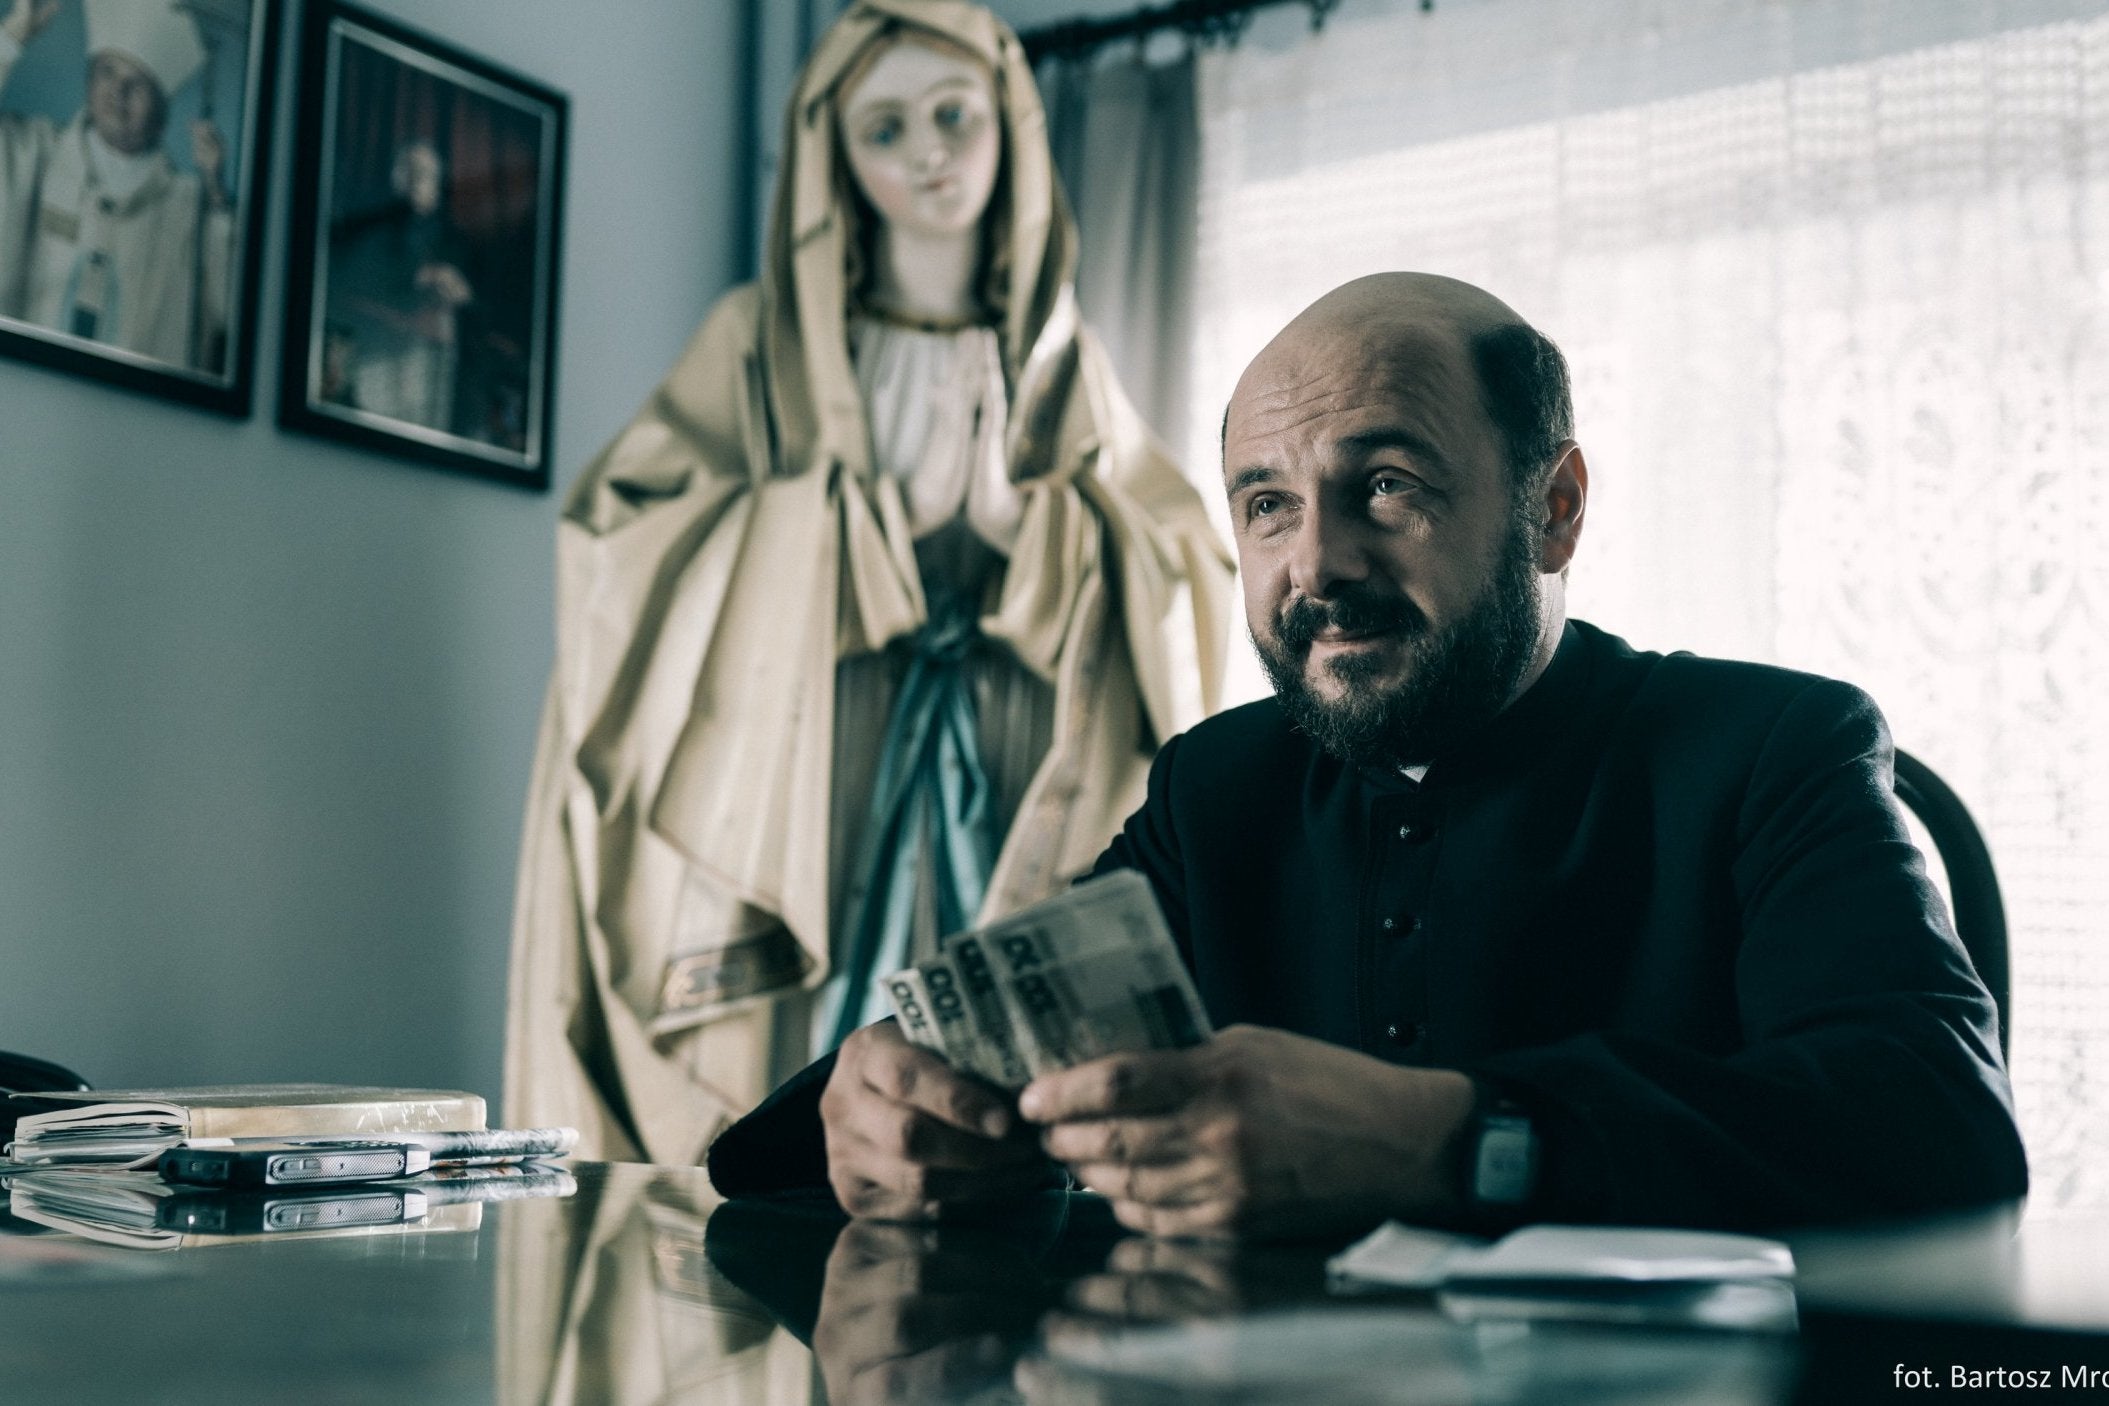 Arkadiusz Jakubik playing a priest in the Polish movie 'Kler', directed by Wojciech Smarzowski